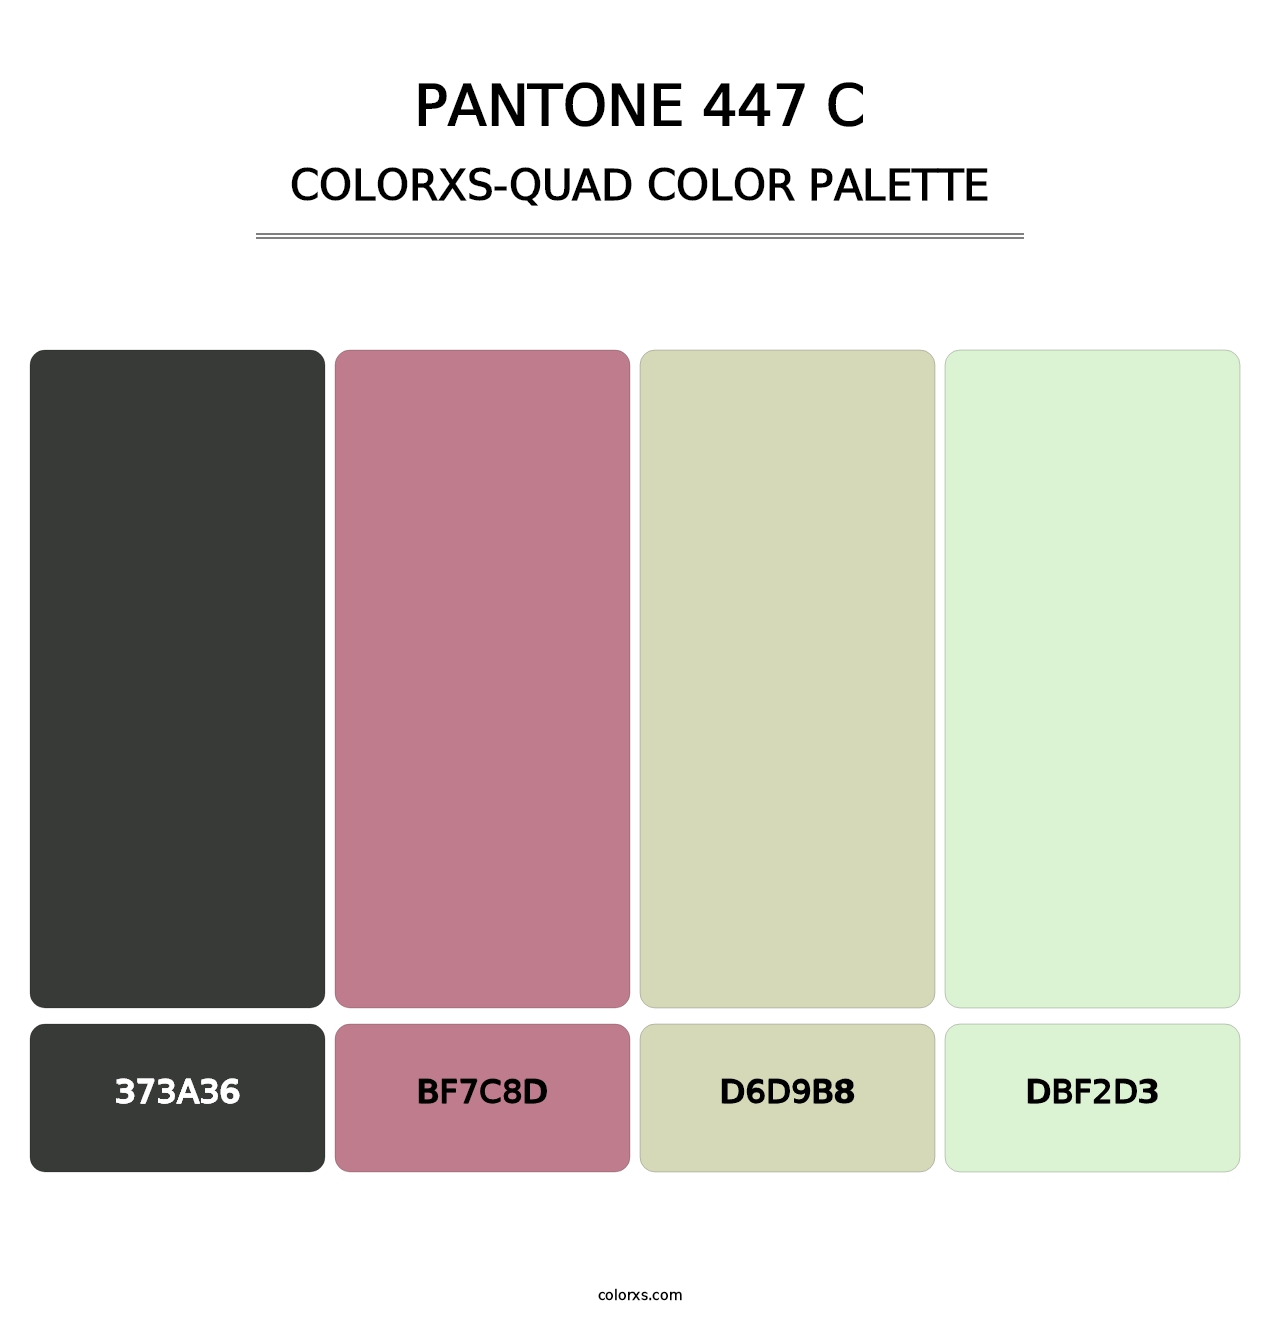 PANTONE 447 C - Colorxs Quad Palette